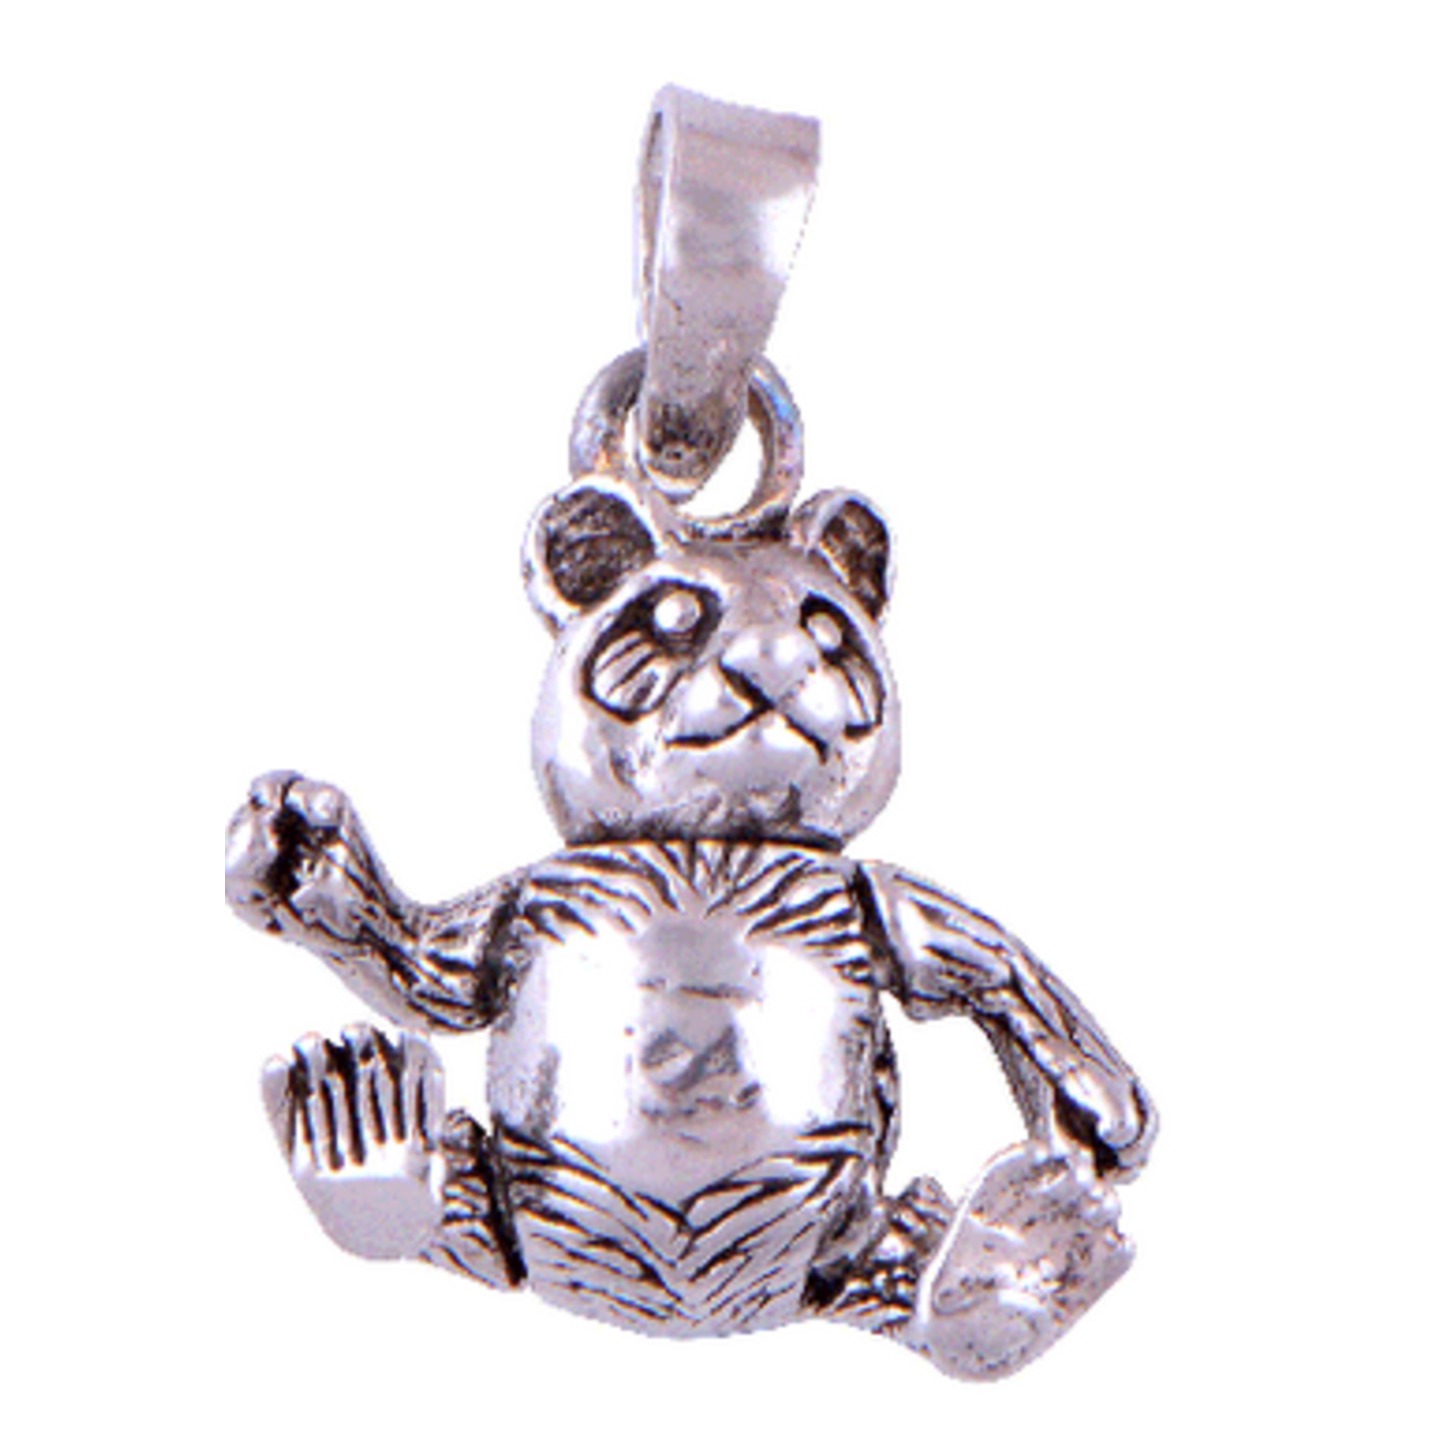 The Bear Silver Pendant